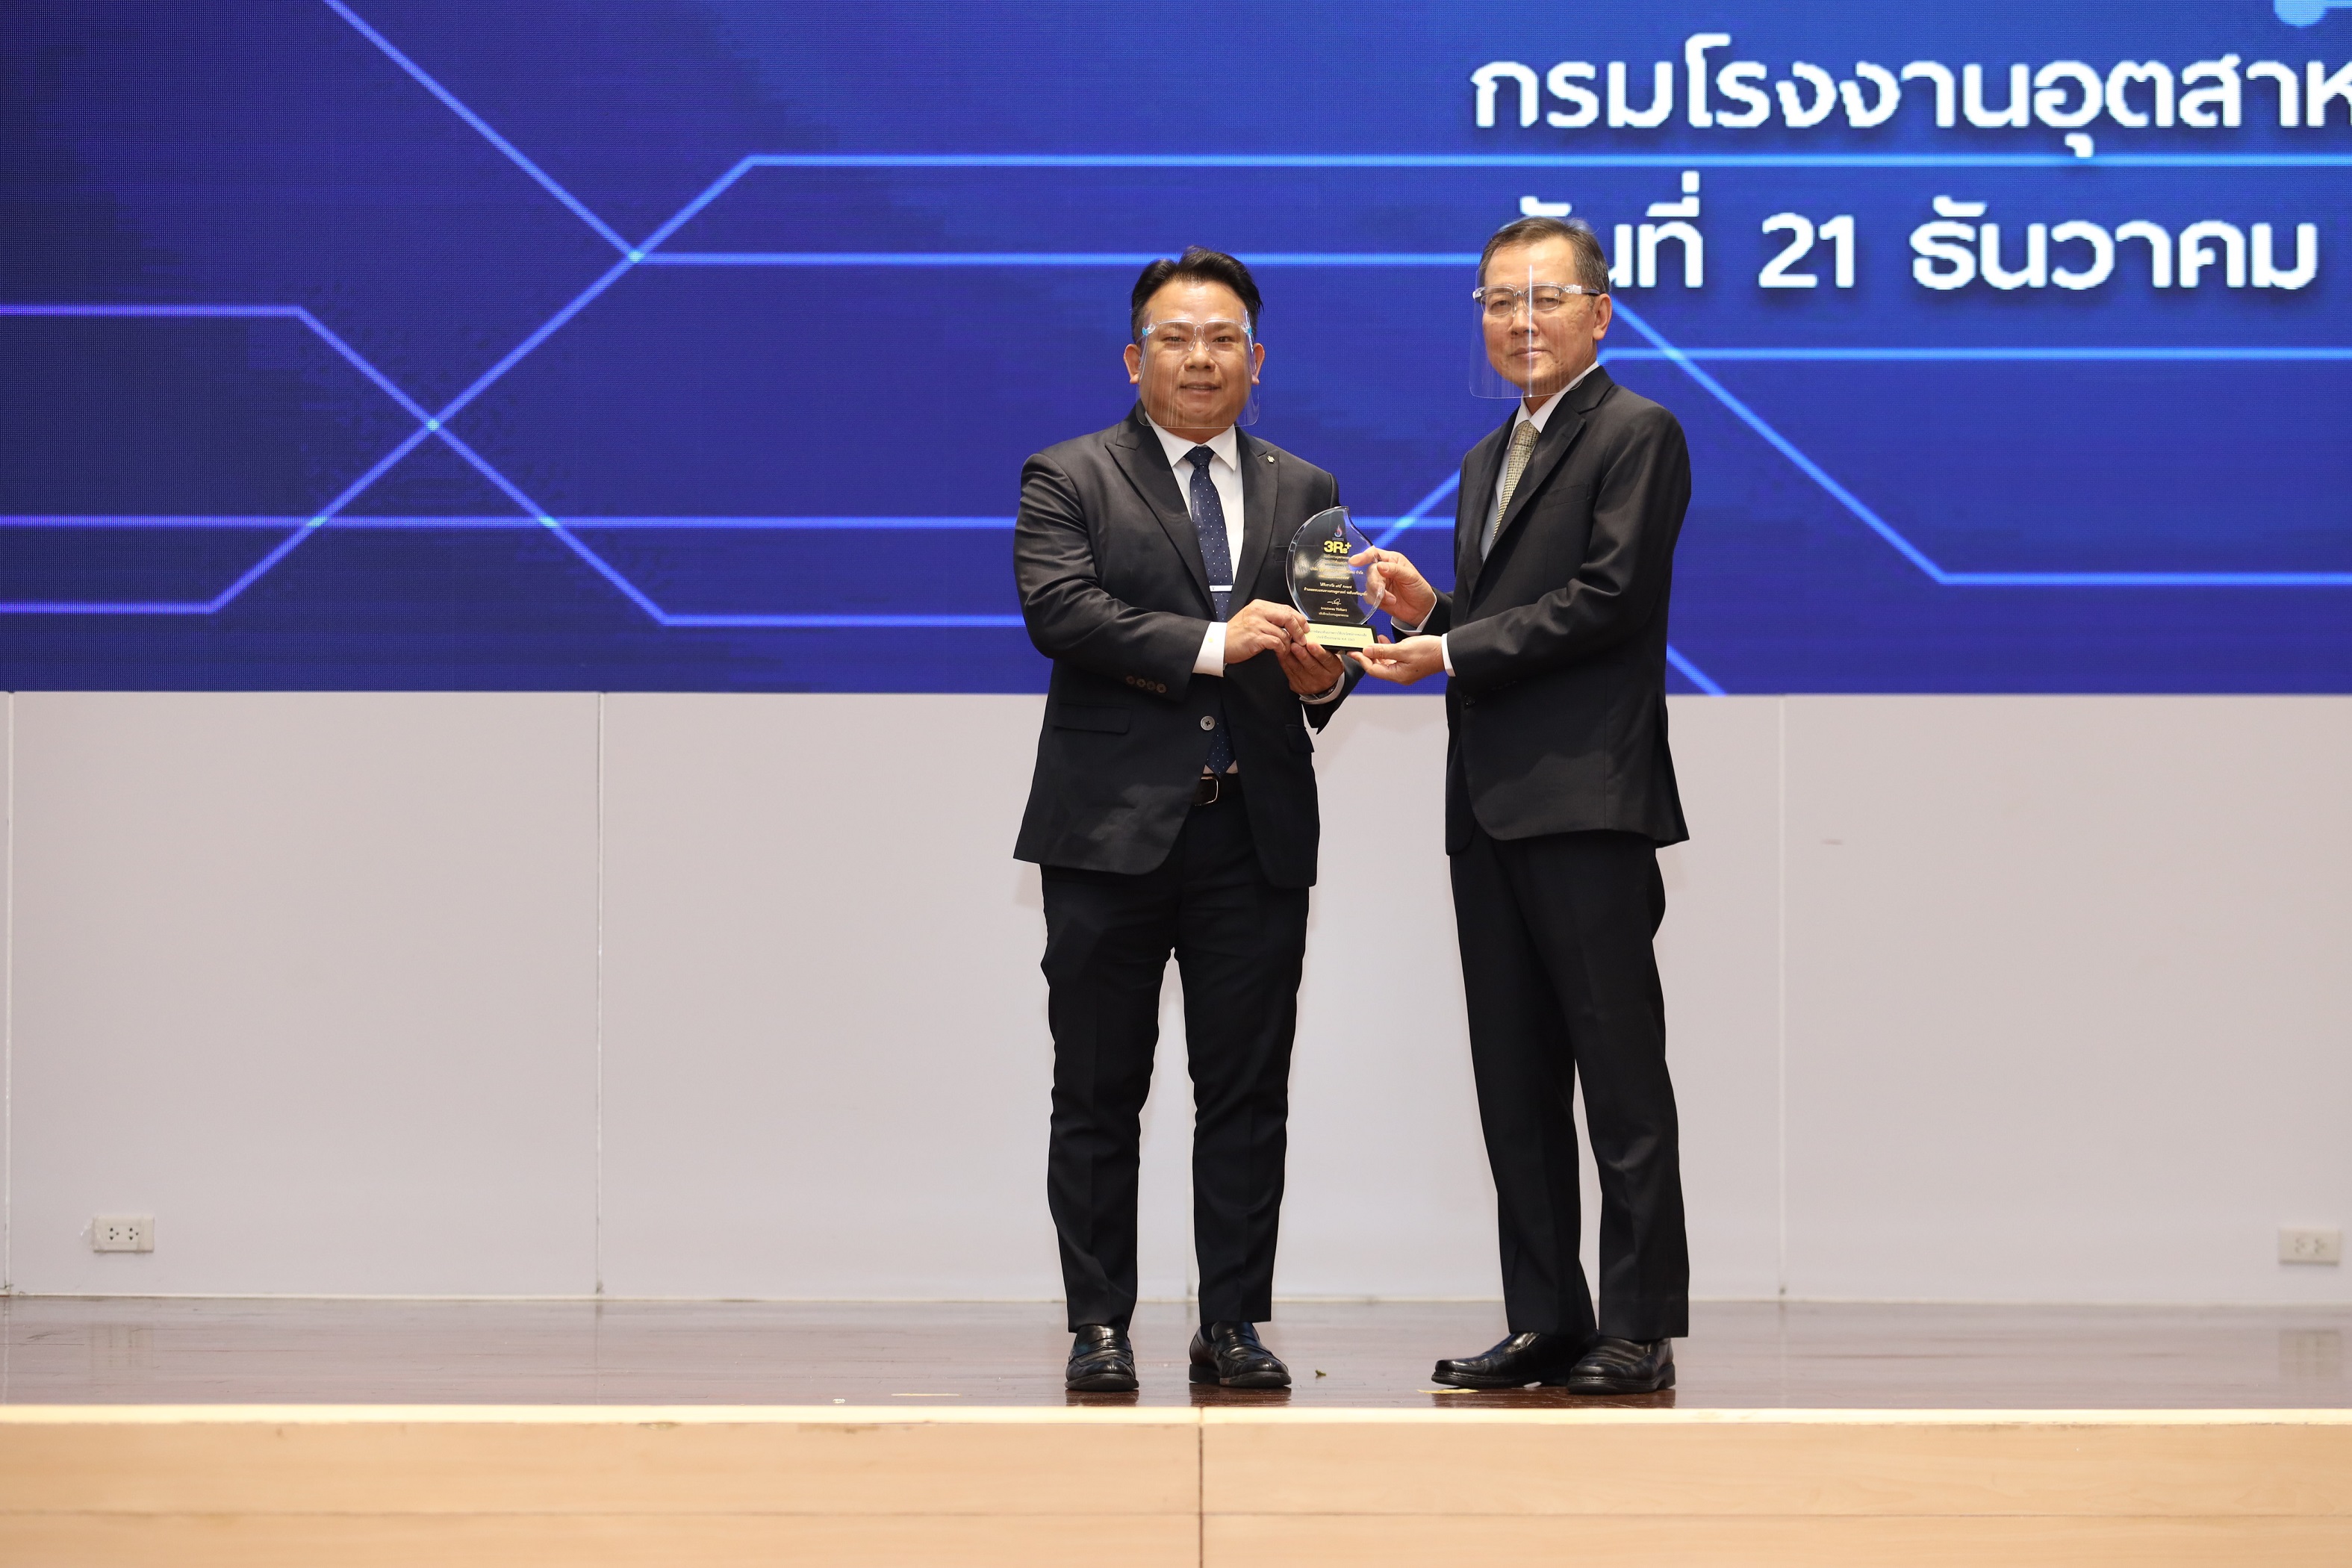 ซูซูกิ คว้า 2 รางวัล กรมโรงงานอุตสาหกรรม ตอกย้ำความมุ่งมั่น ในการเป็นองค์กรอนุรักษ์สิ่งแวดล้อม 3Rs Award